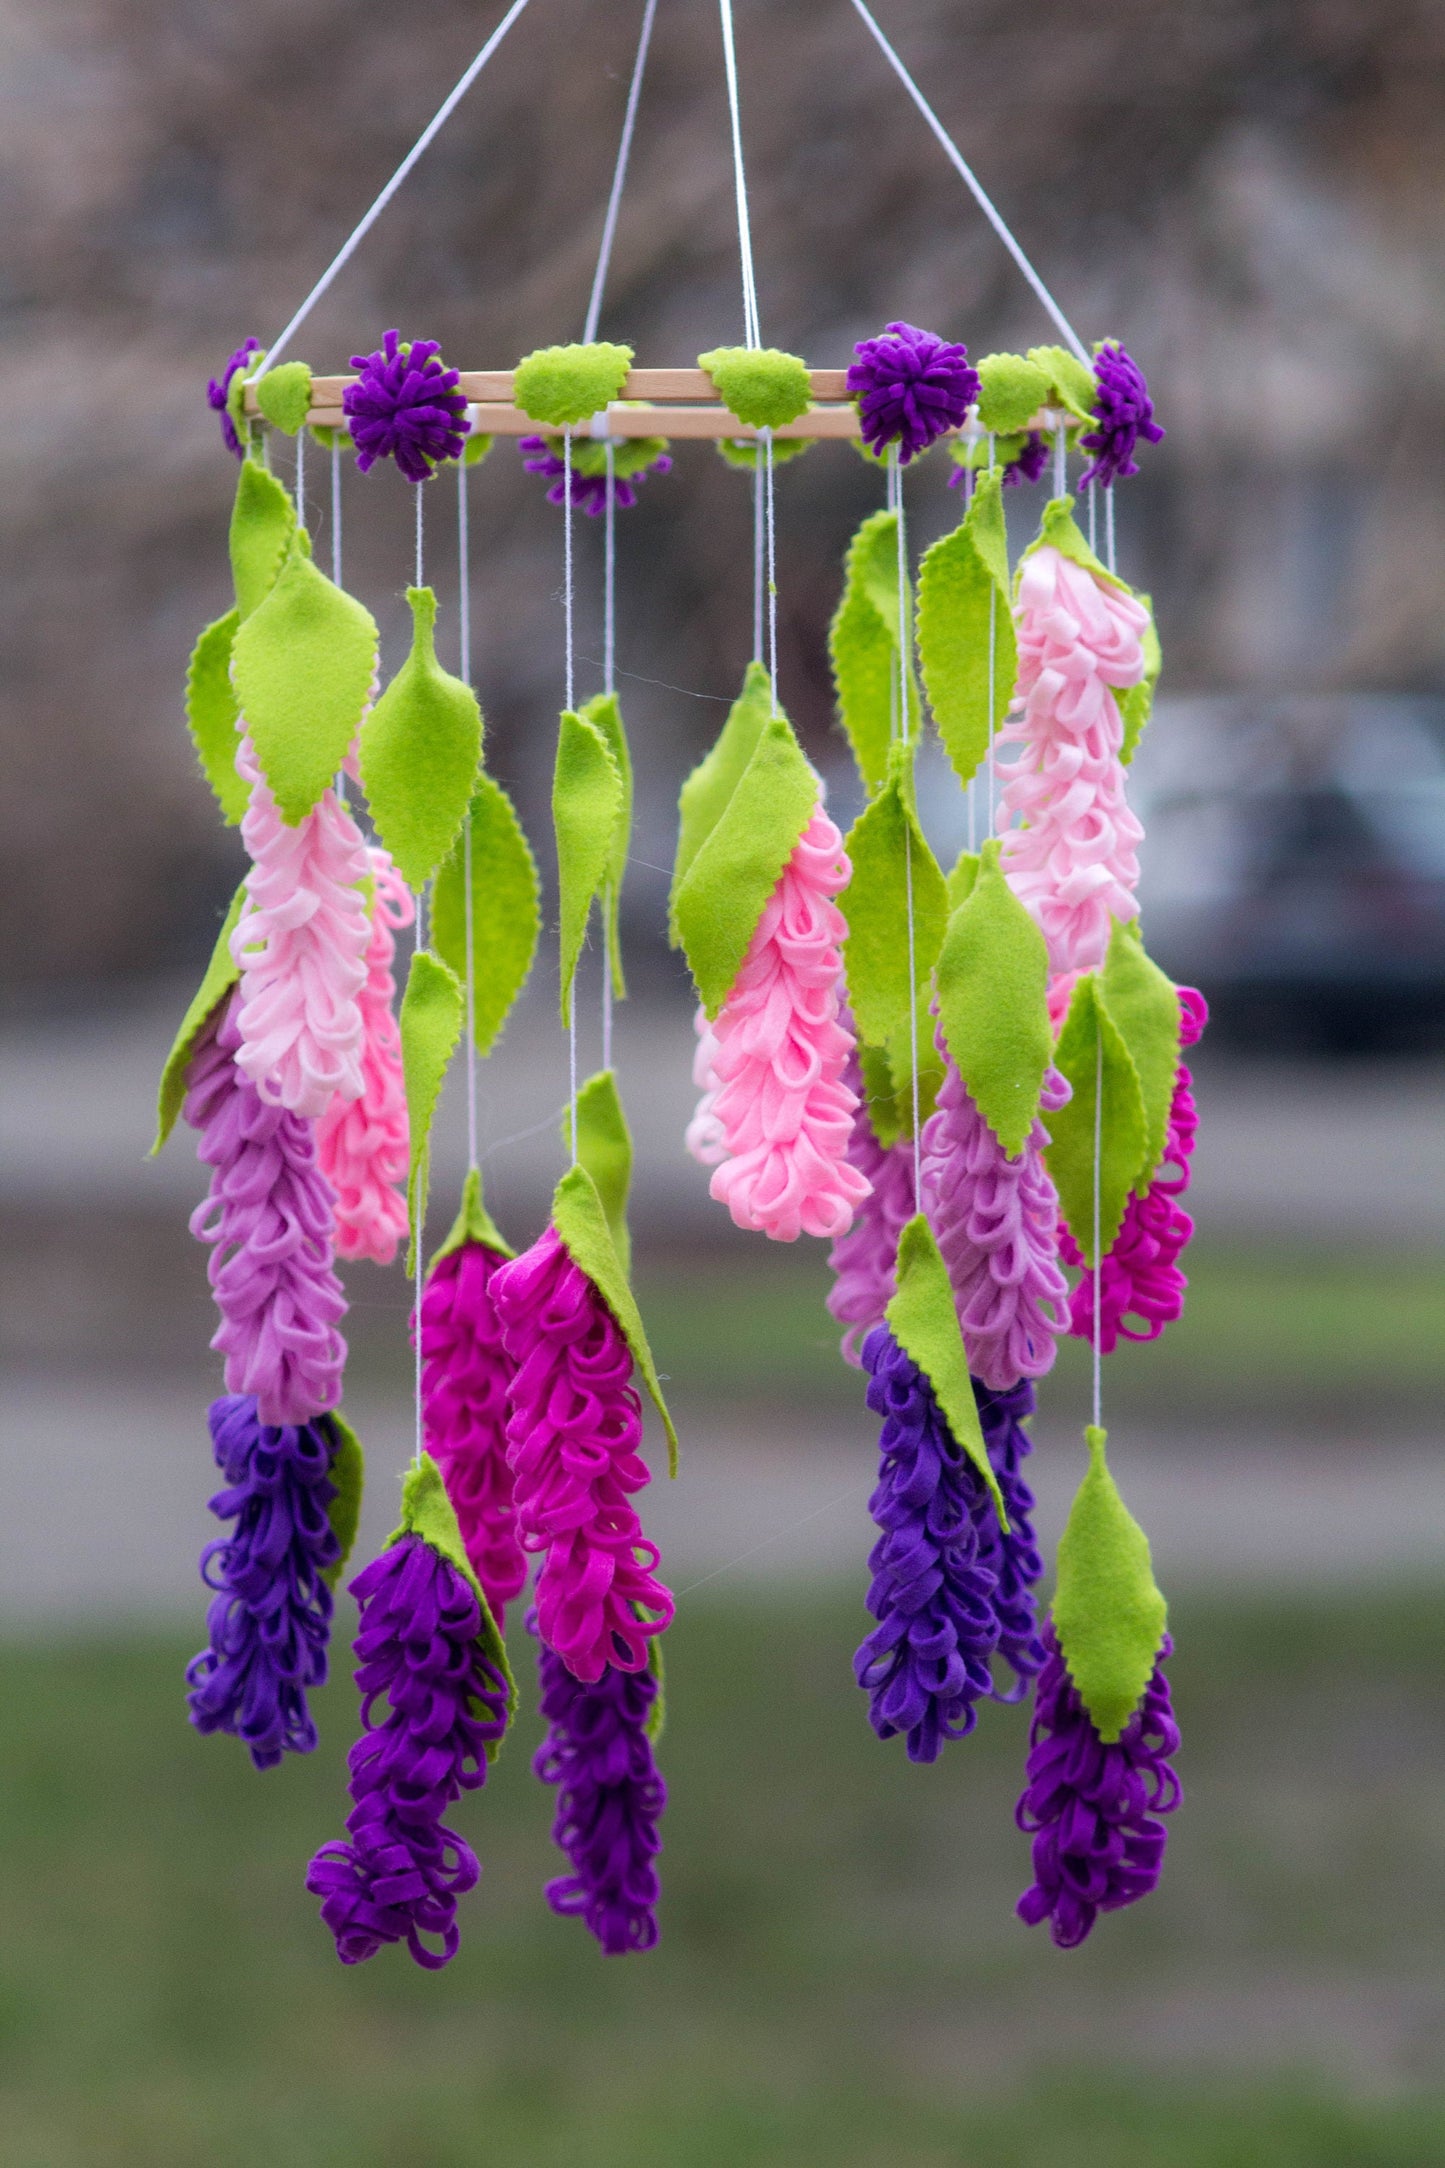 Flower chandelier nursery mobile